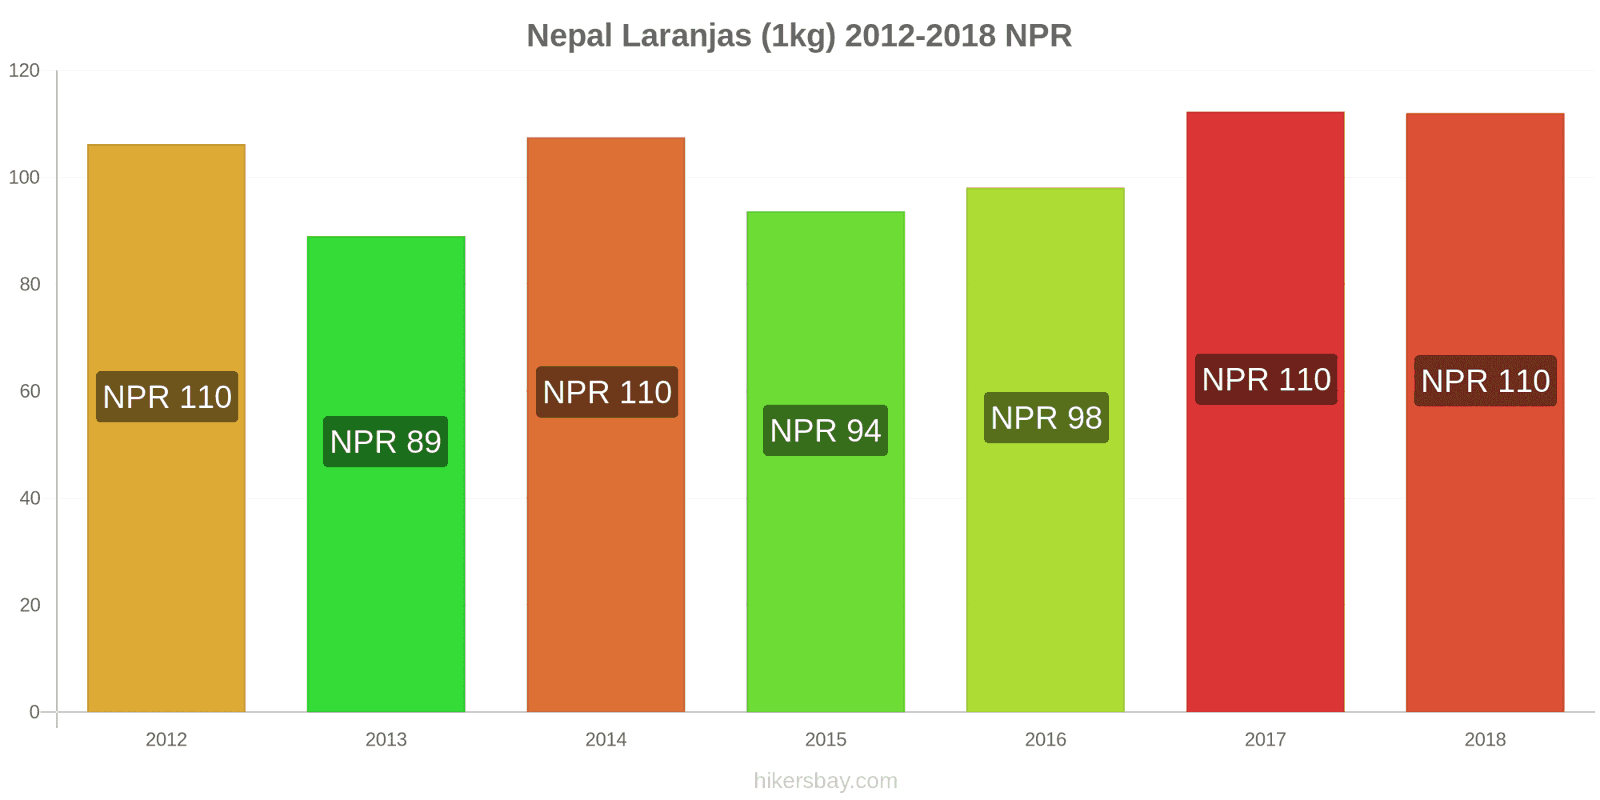 Nepal mudanças de preços Laranjas (1kg) hikersbay.com